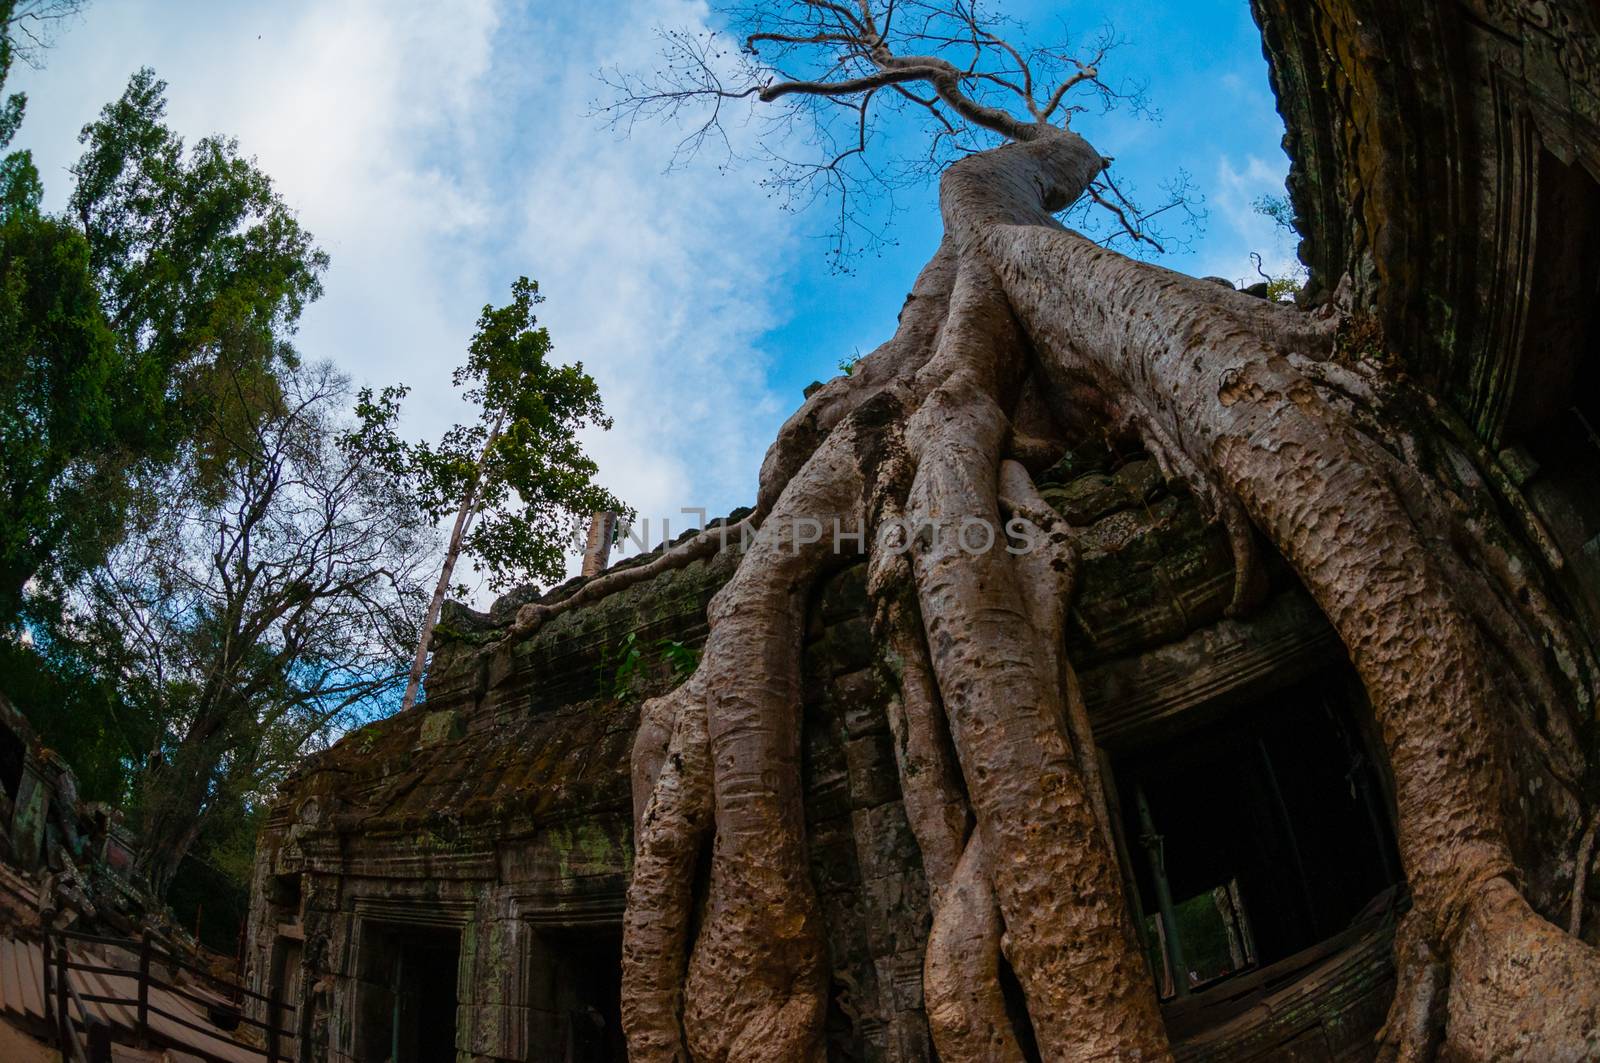 Tree from below fish eye Ta Prohm Angkor Wat